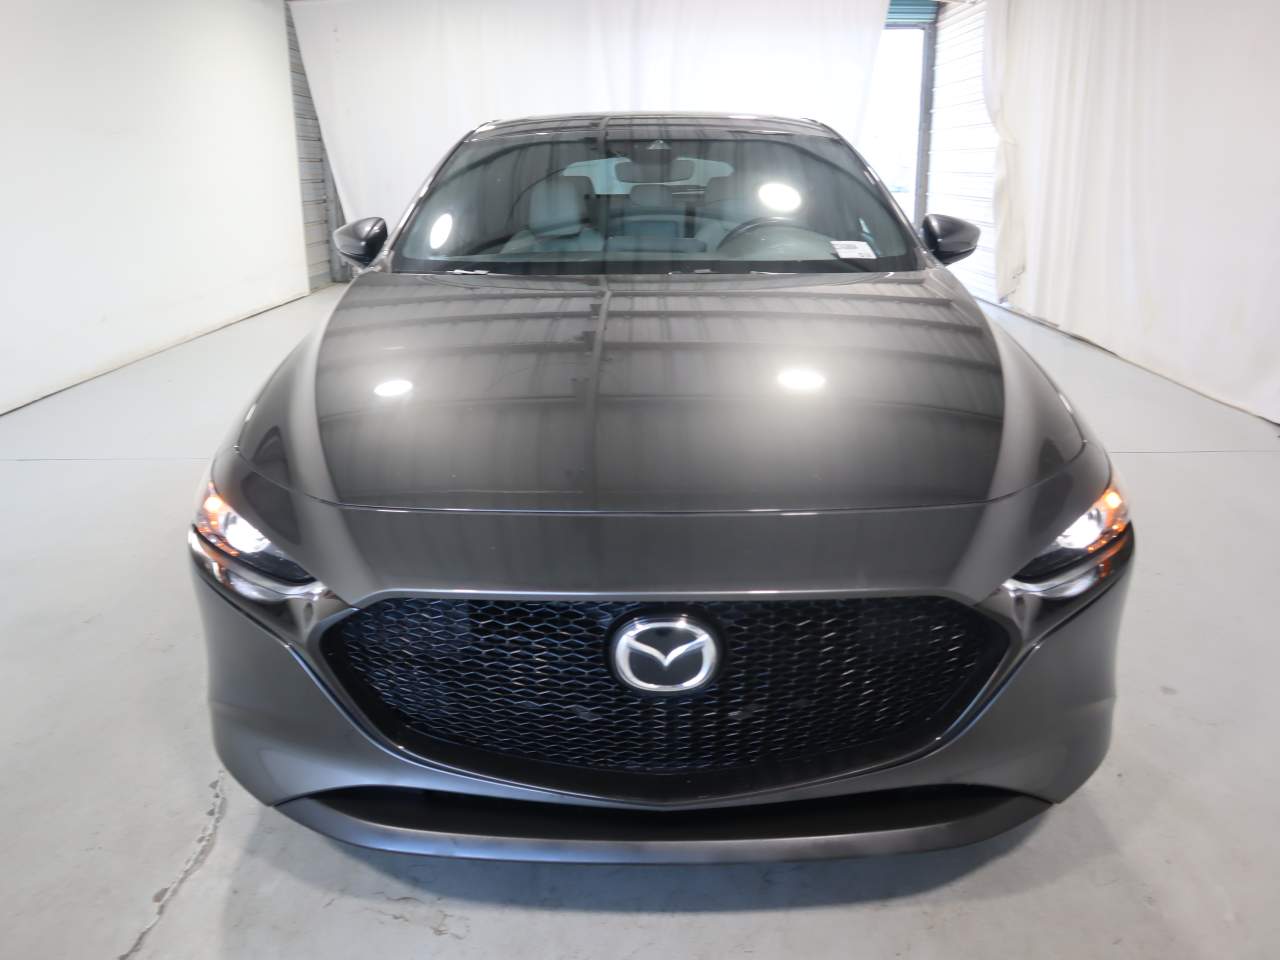 2021 Mazda3 Hatchback Preferred